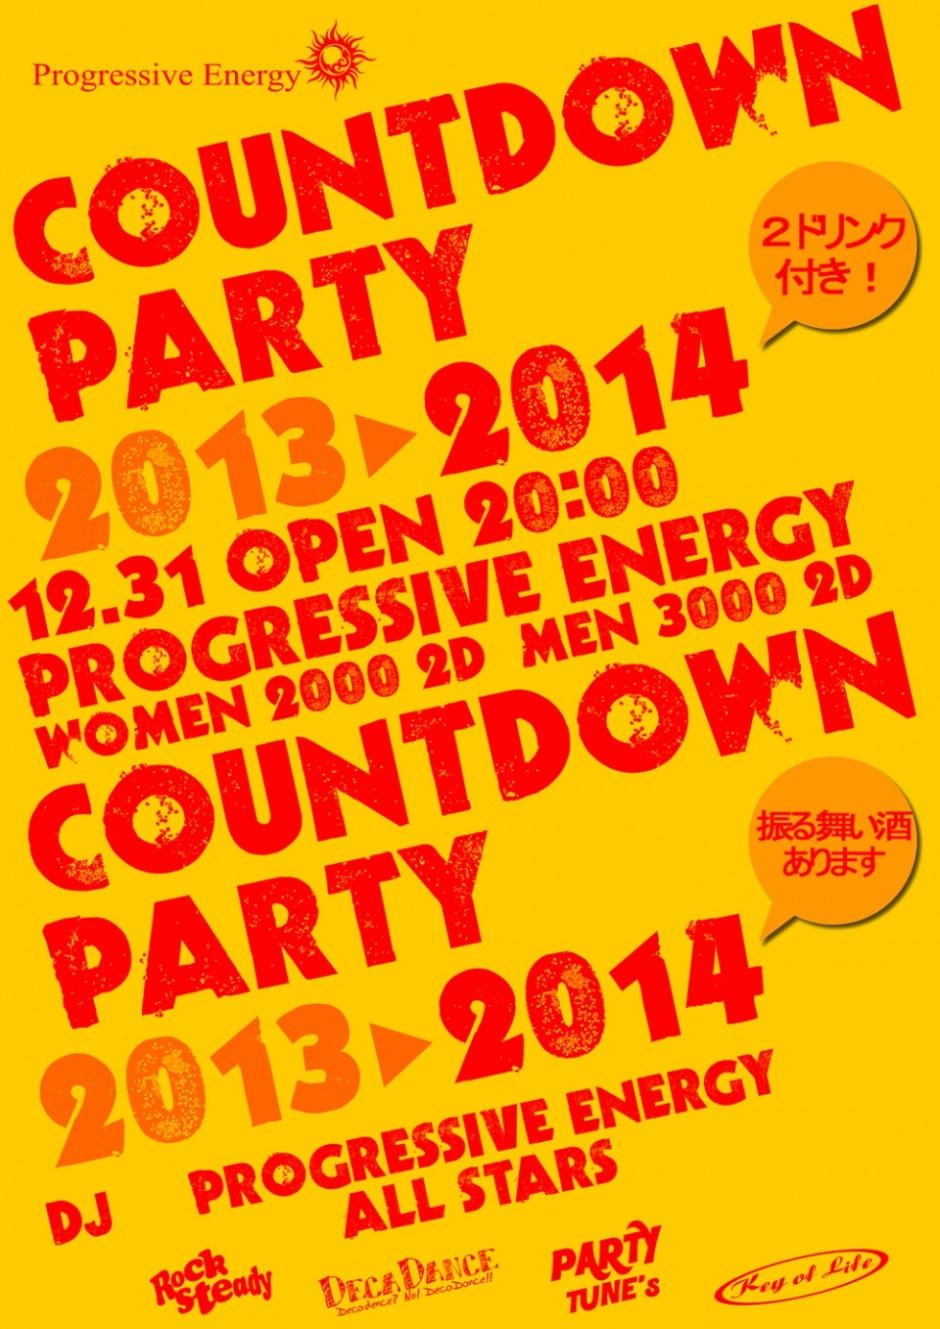 12/31 (TUE) PROGRESSIVE ENERGY COUNTDOWN PARTY 2013-2014